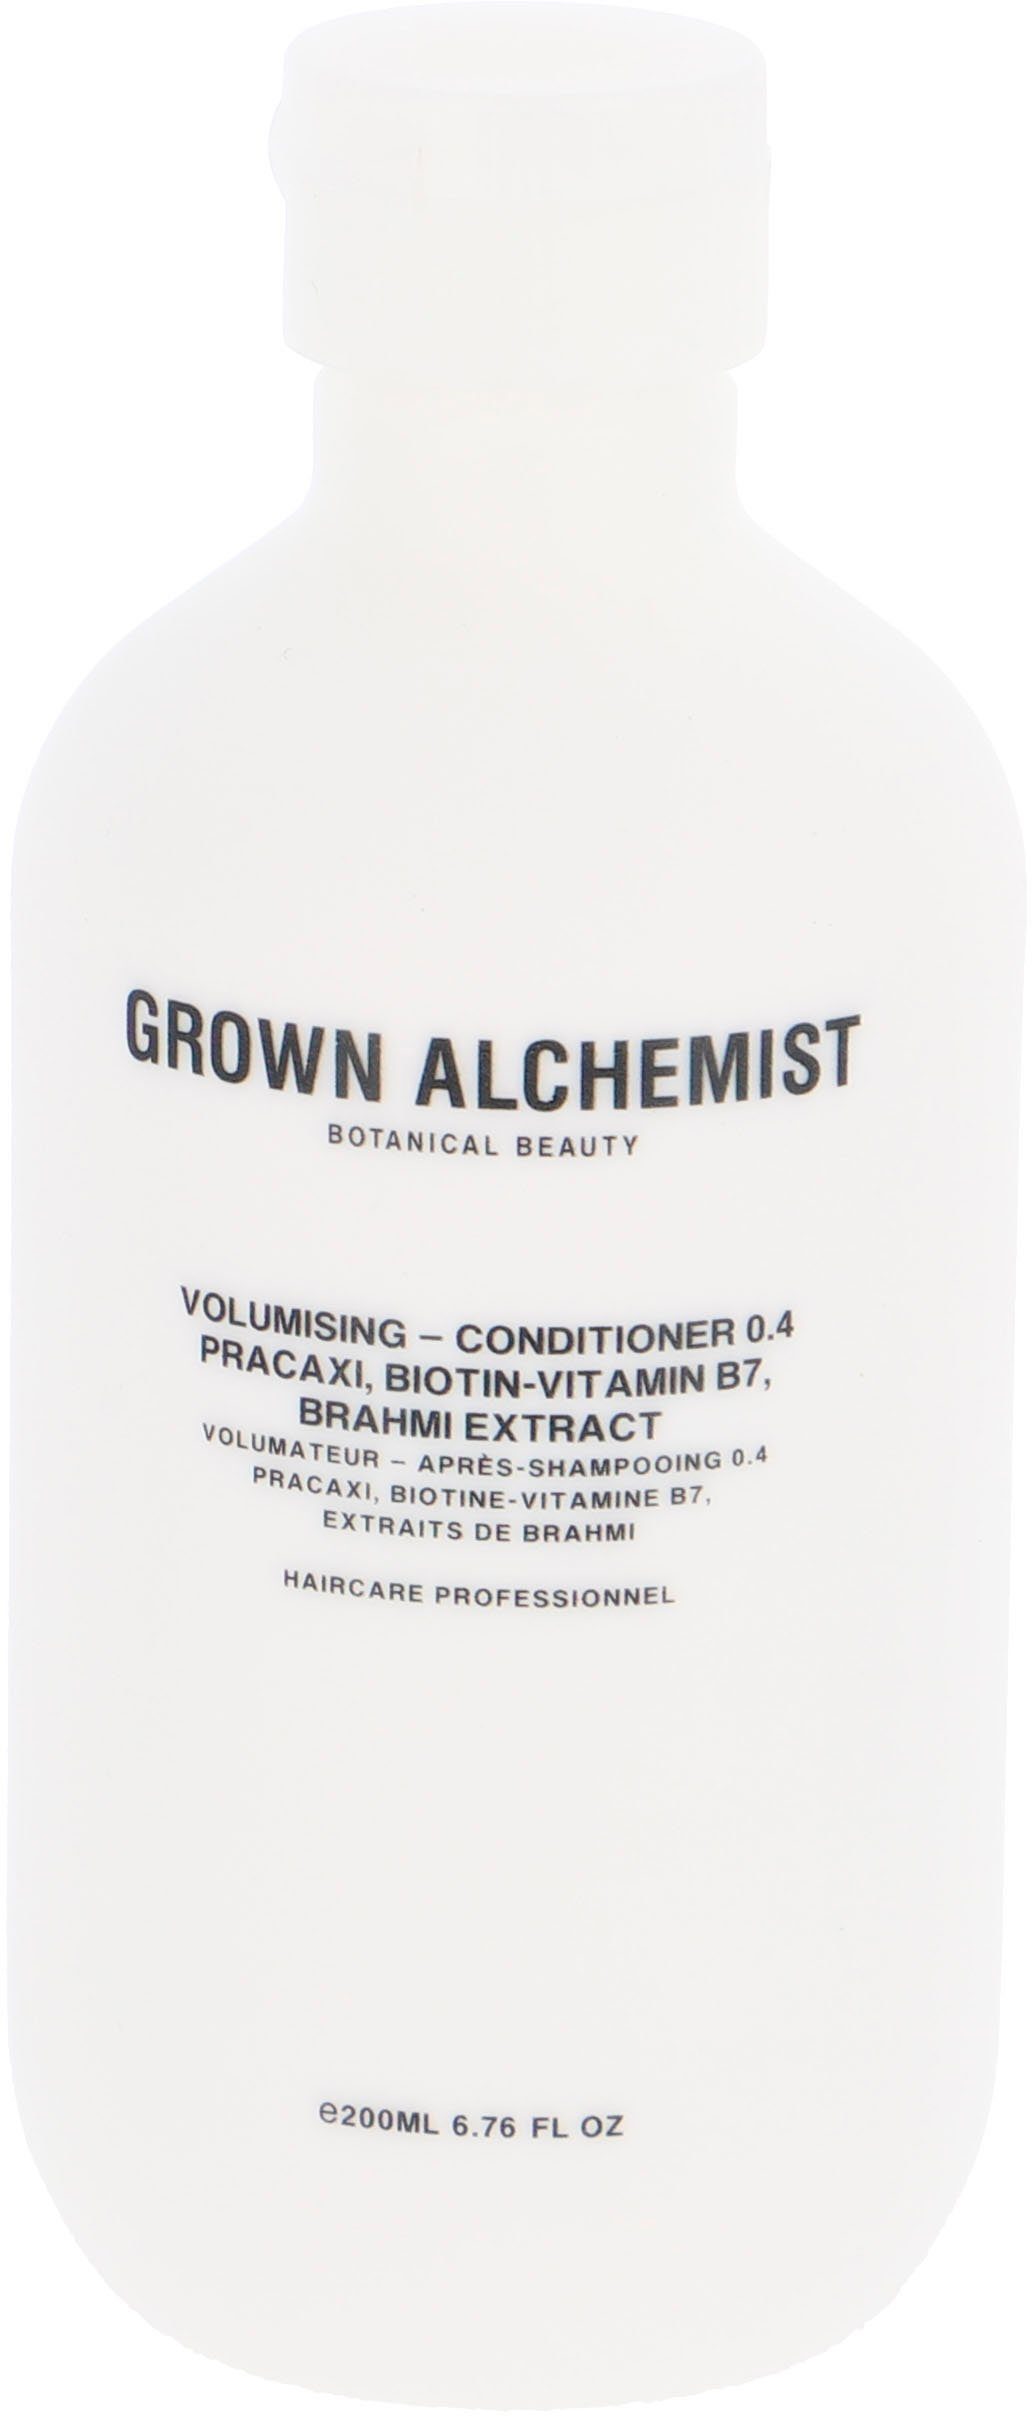 ALCHEMIST 0.4, B7, Pracaxi, Haarspülung GROWN Conditioner Volumising Extract Brahmi Biotin-Vitamin -